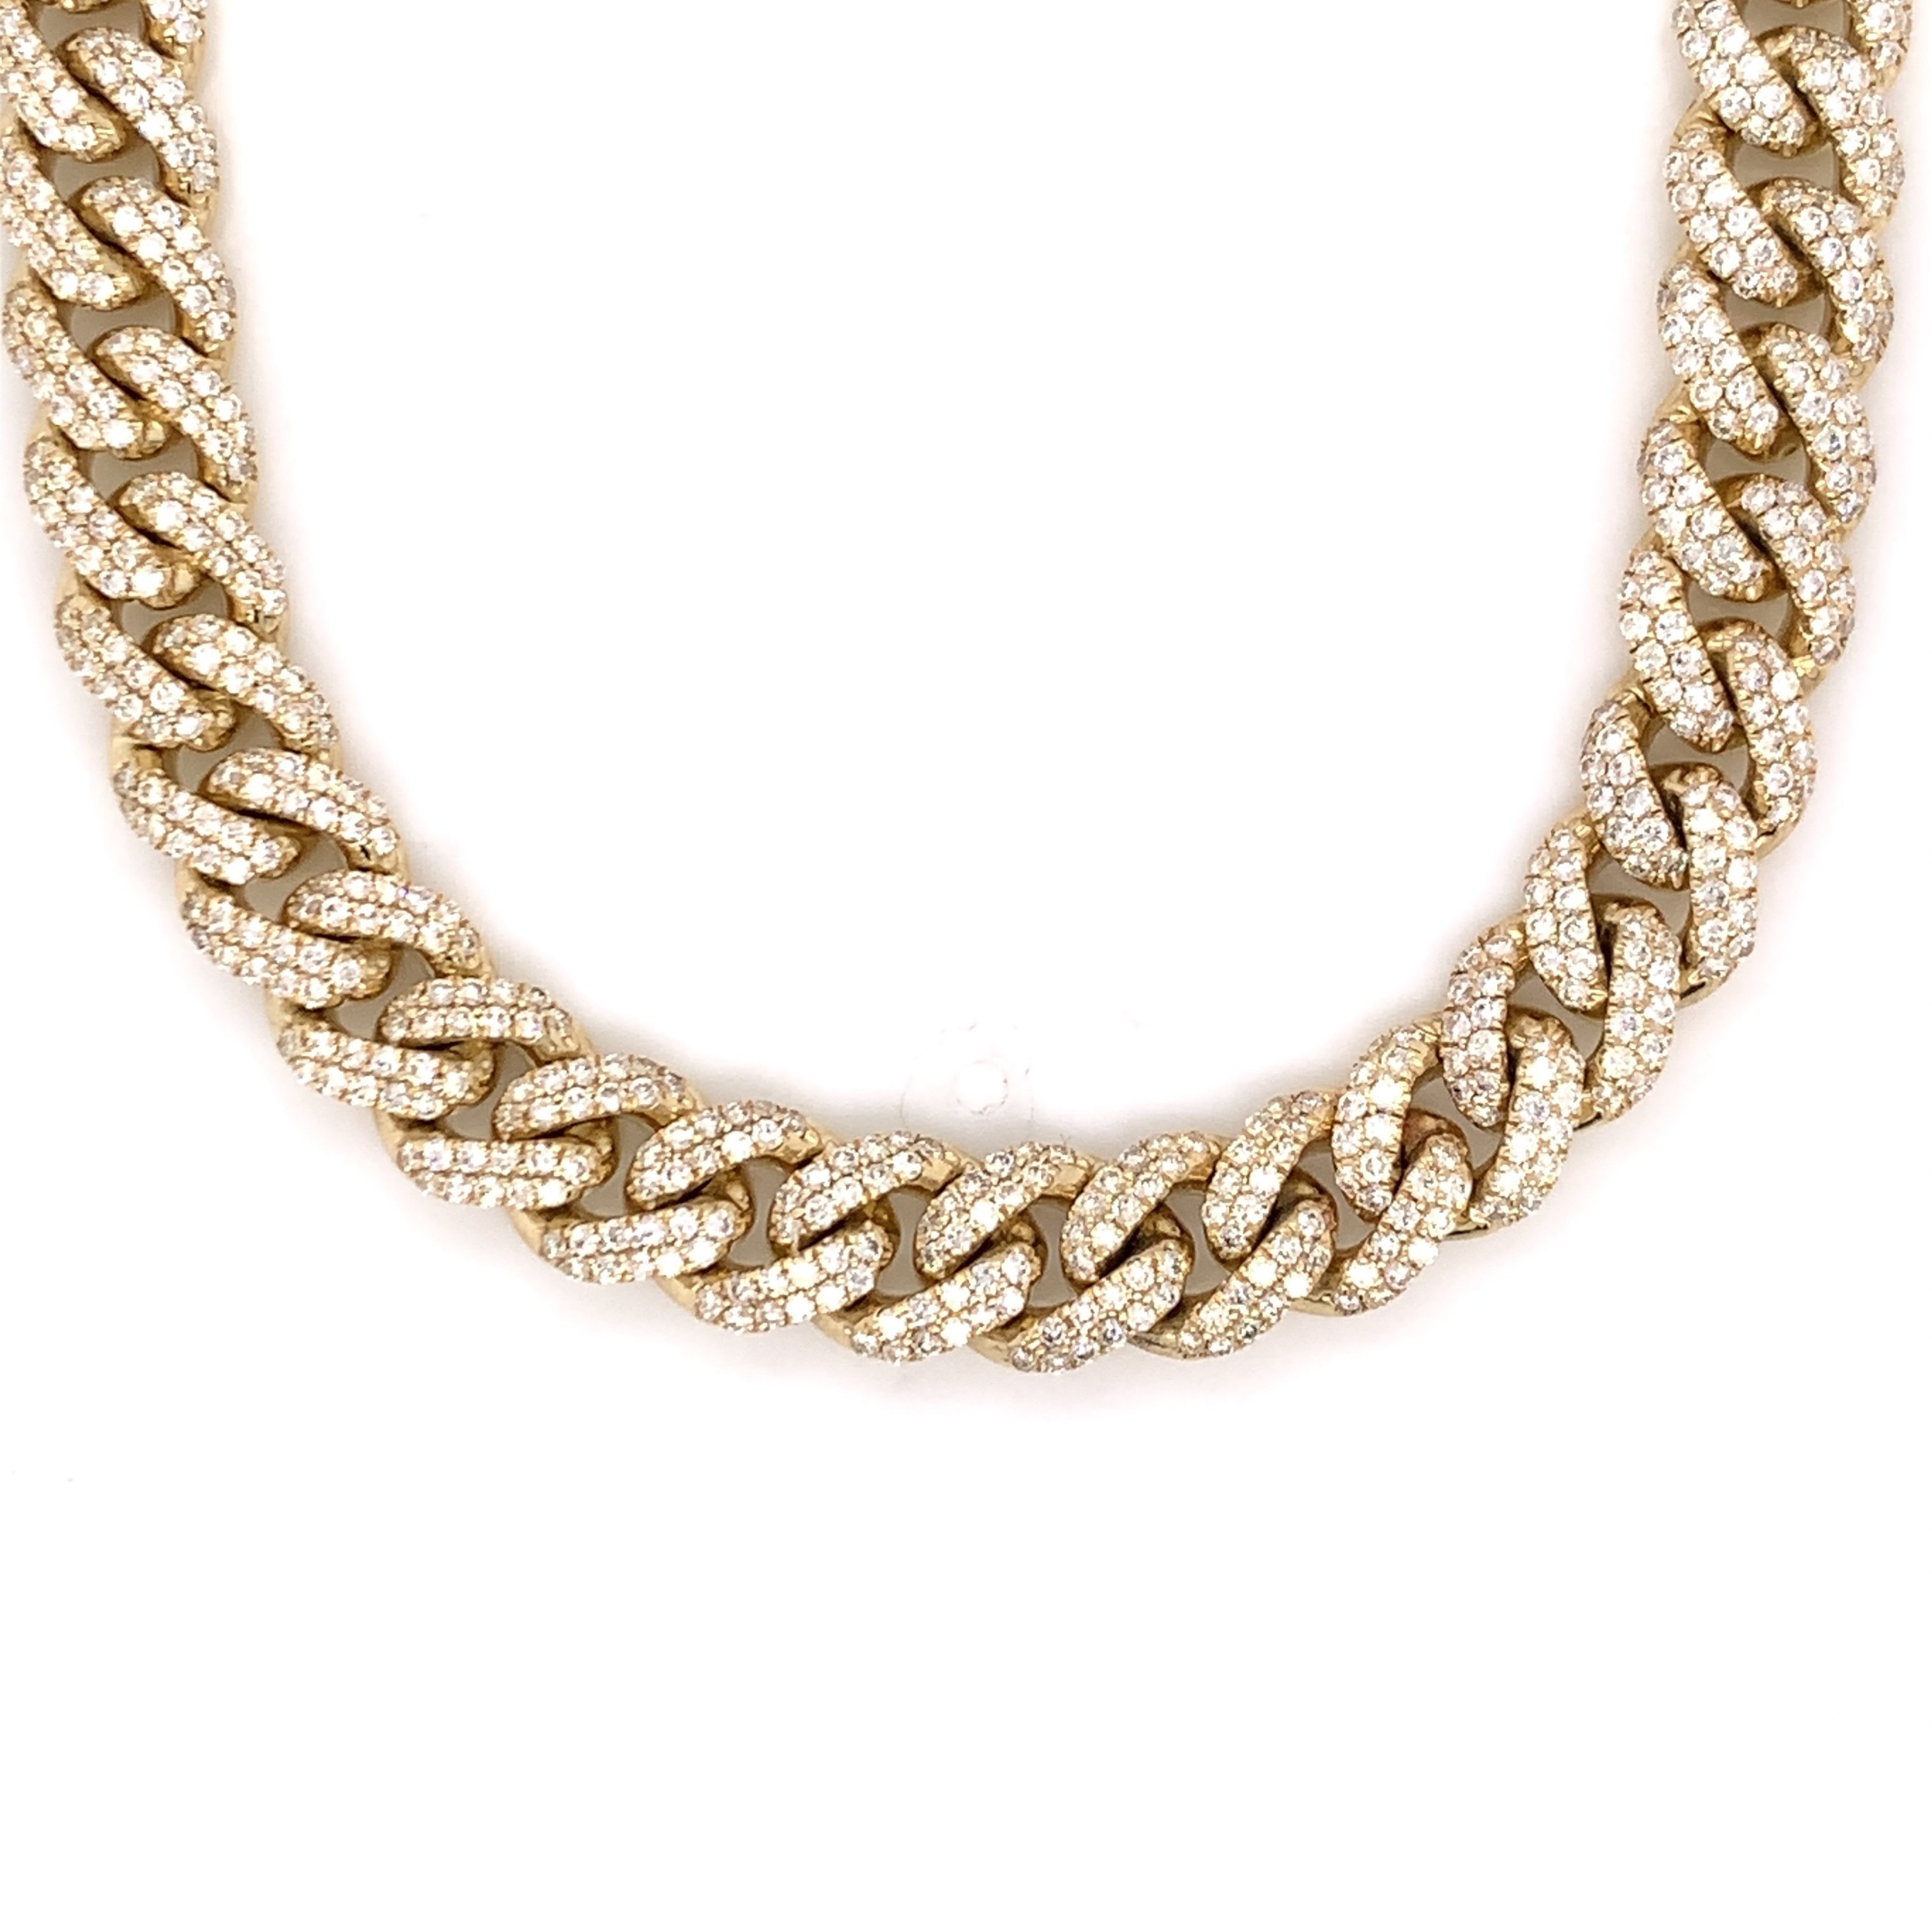 20.00 CT. Diamond Miami Cuban Chain in 10KT Gold - White Carat - USA & Canada